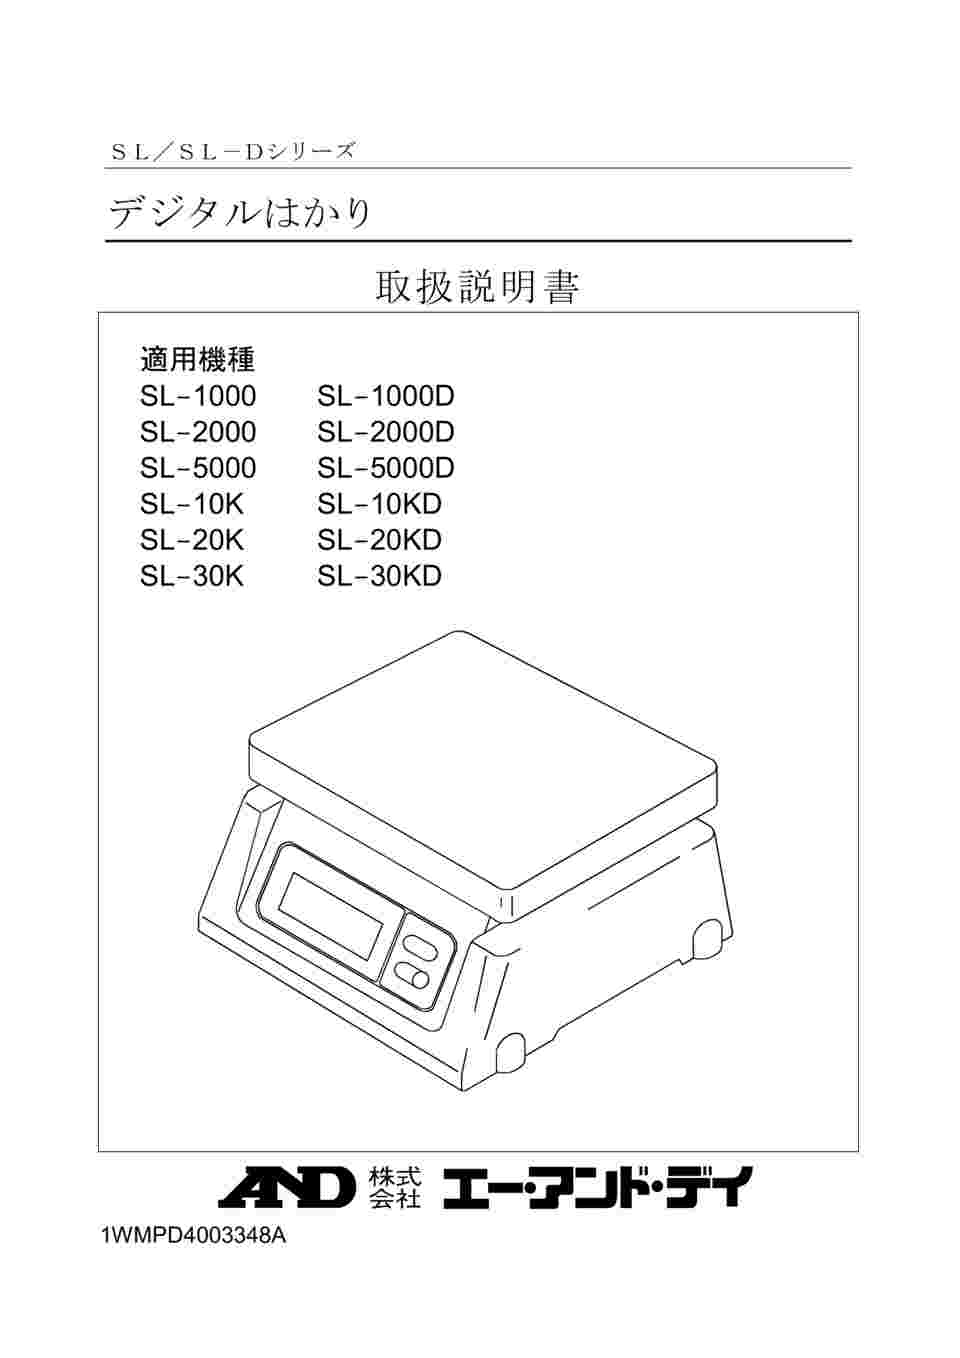 AD デジタル両面表示はかり SL-2000D ≪ひょう量:2000g 最小表示:1g 皿寸法:230(W)*190(D)mm 検定無≫ - 3